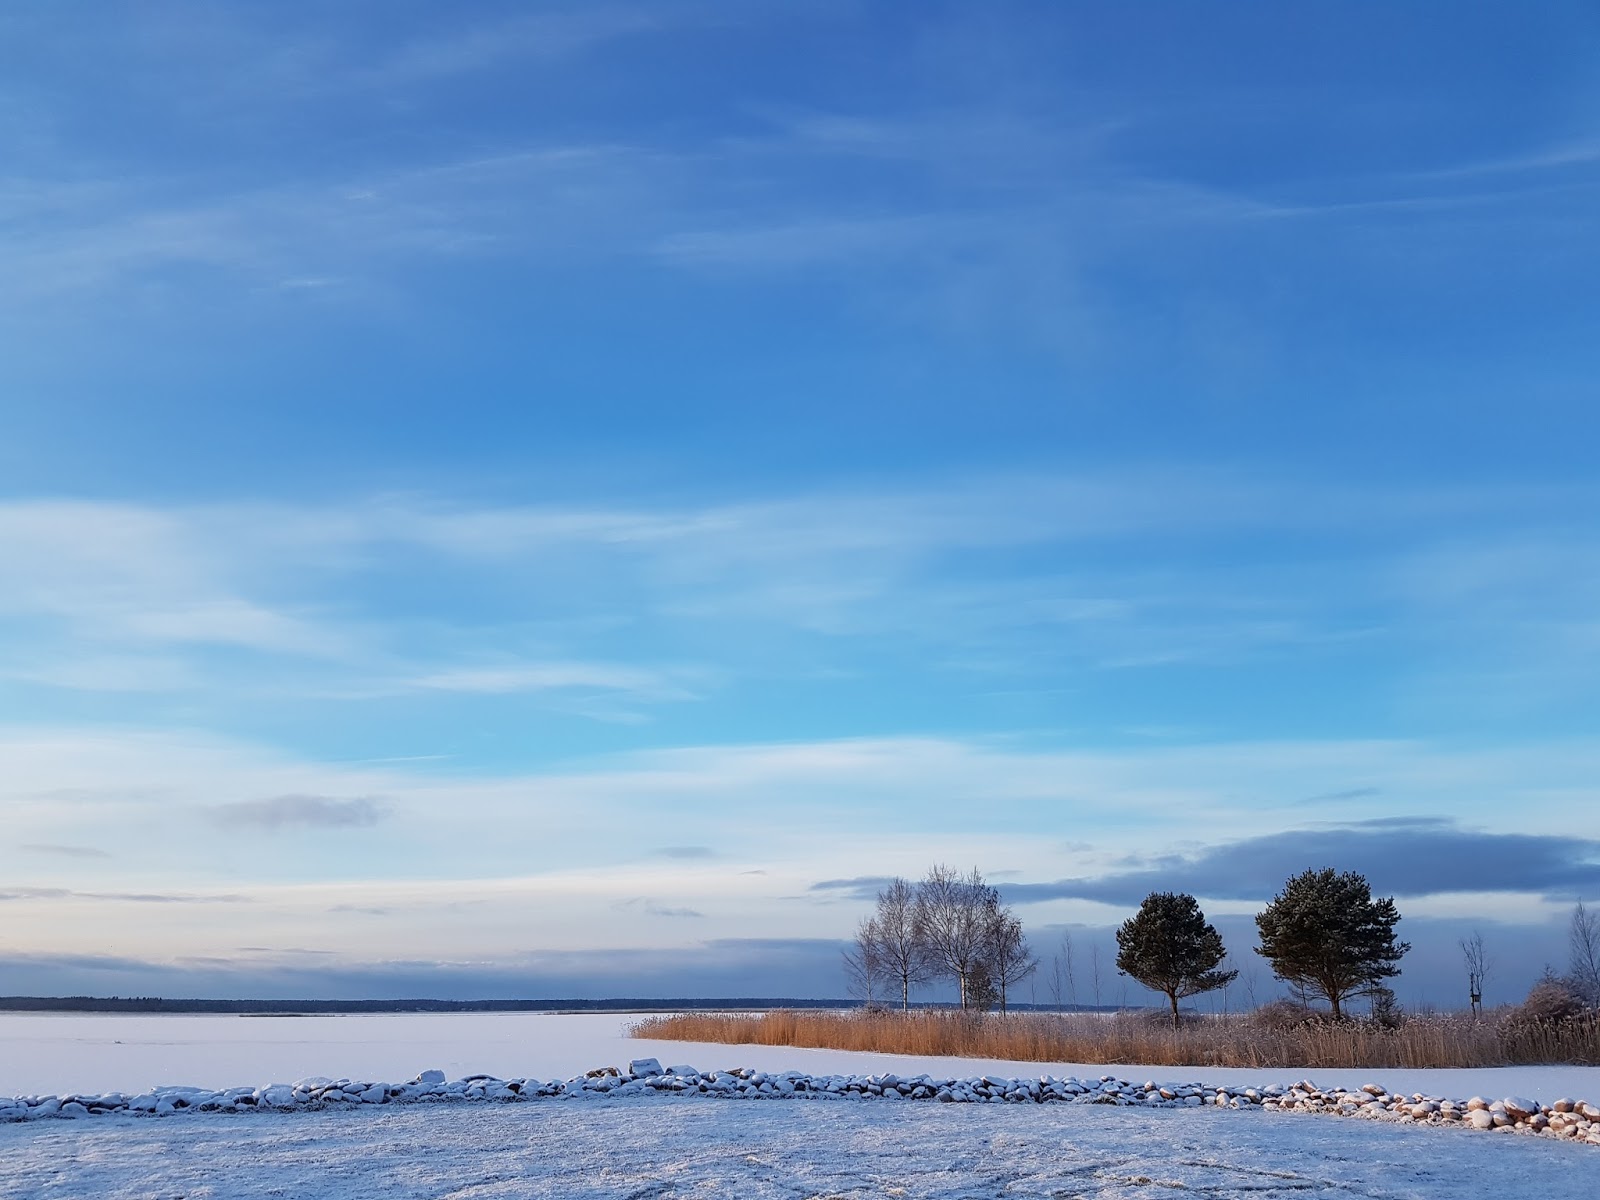 frozen ocean scenery in finland